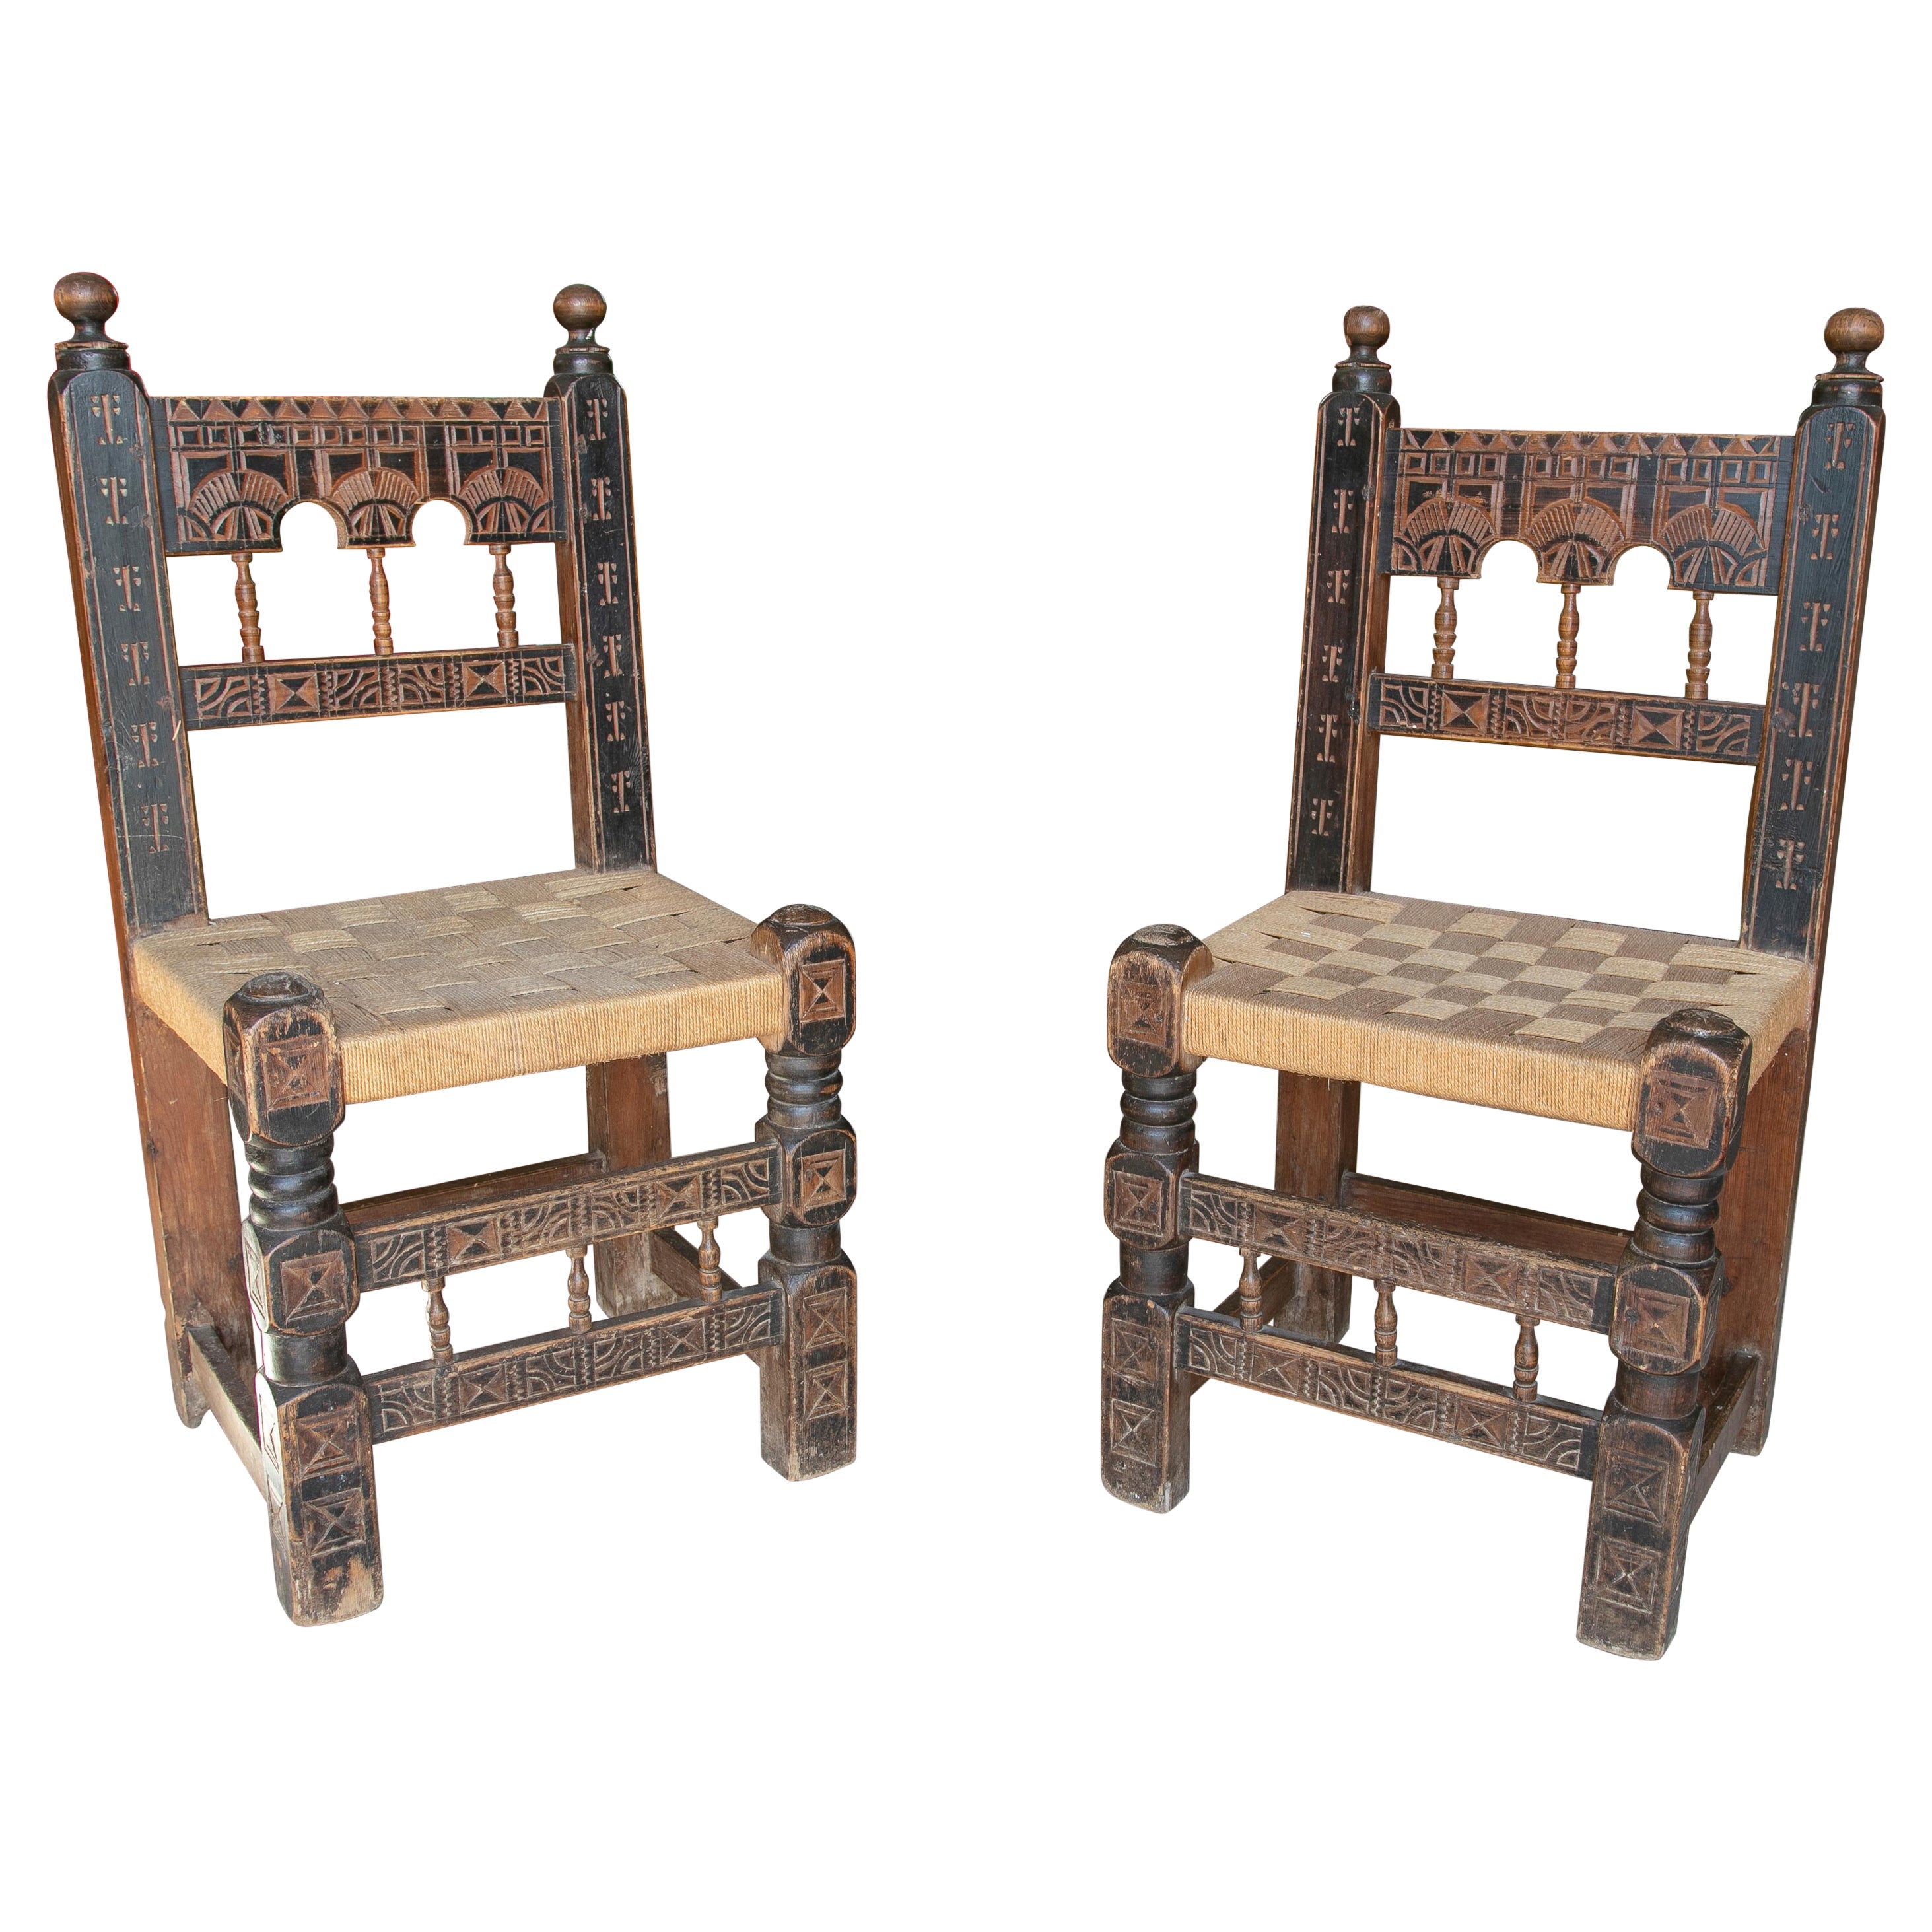 Paire de chaises espagnoles des années 1920 en bois peint et sculpté à la main avec sièges en jonc tissé